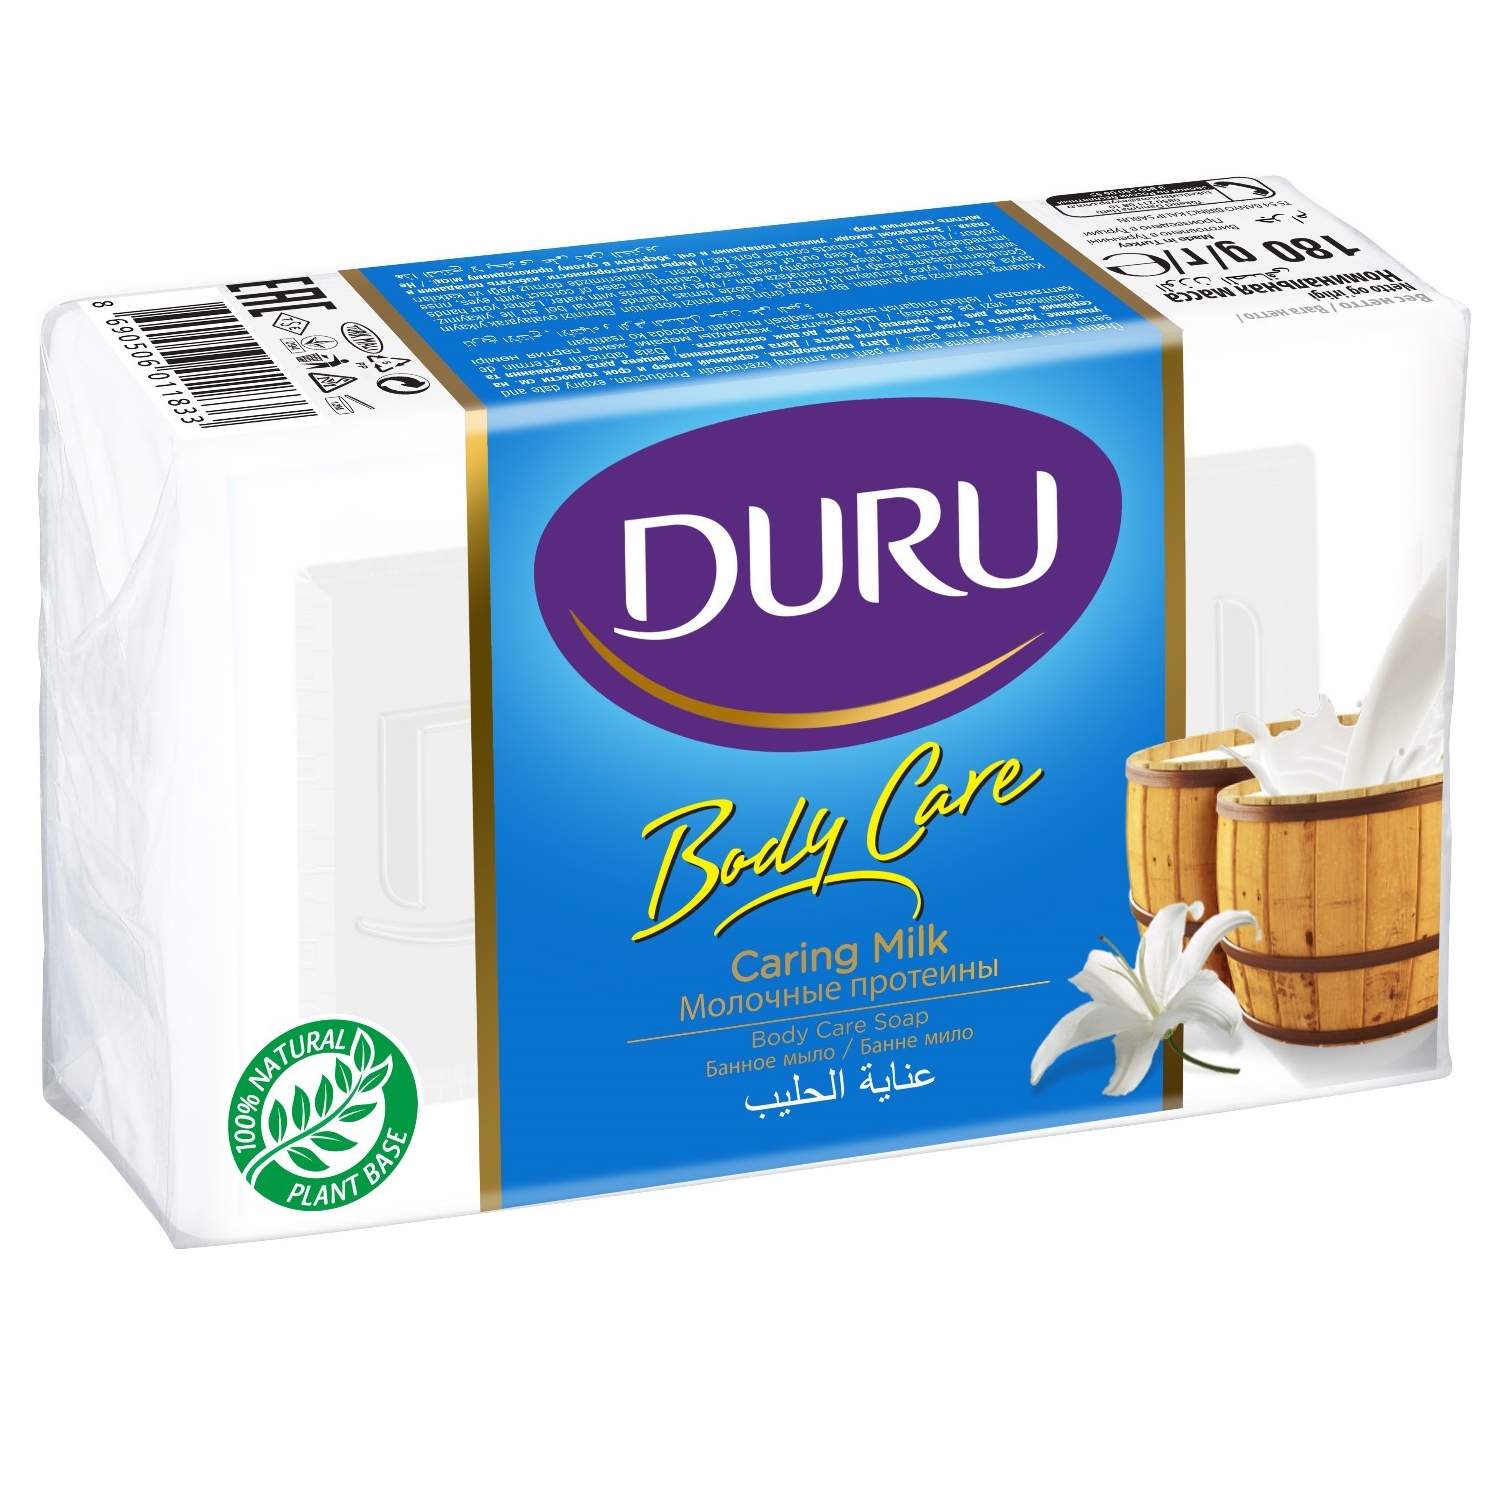 Мыло Duru банное молочные протеины, 140 г мыло bodycare банное молочные протеины 140 г